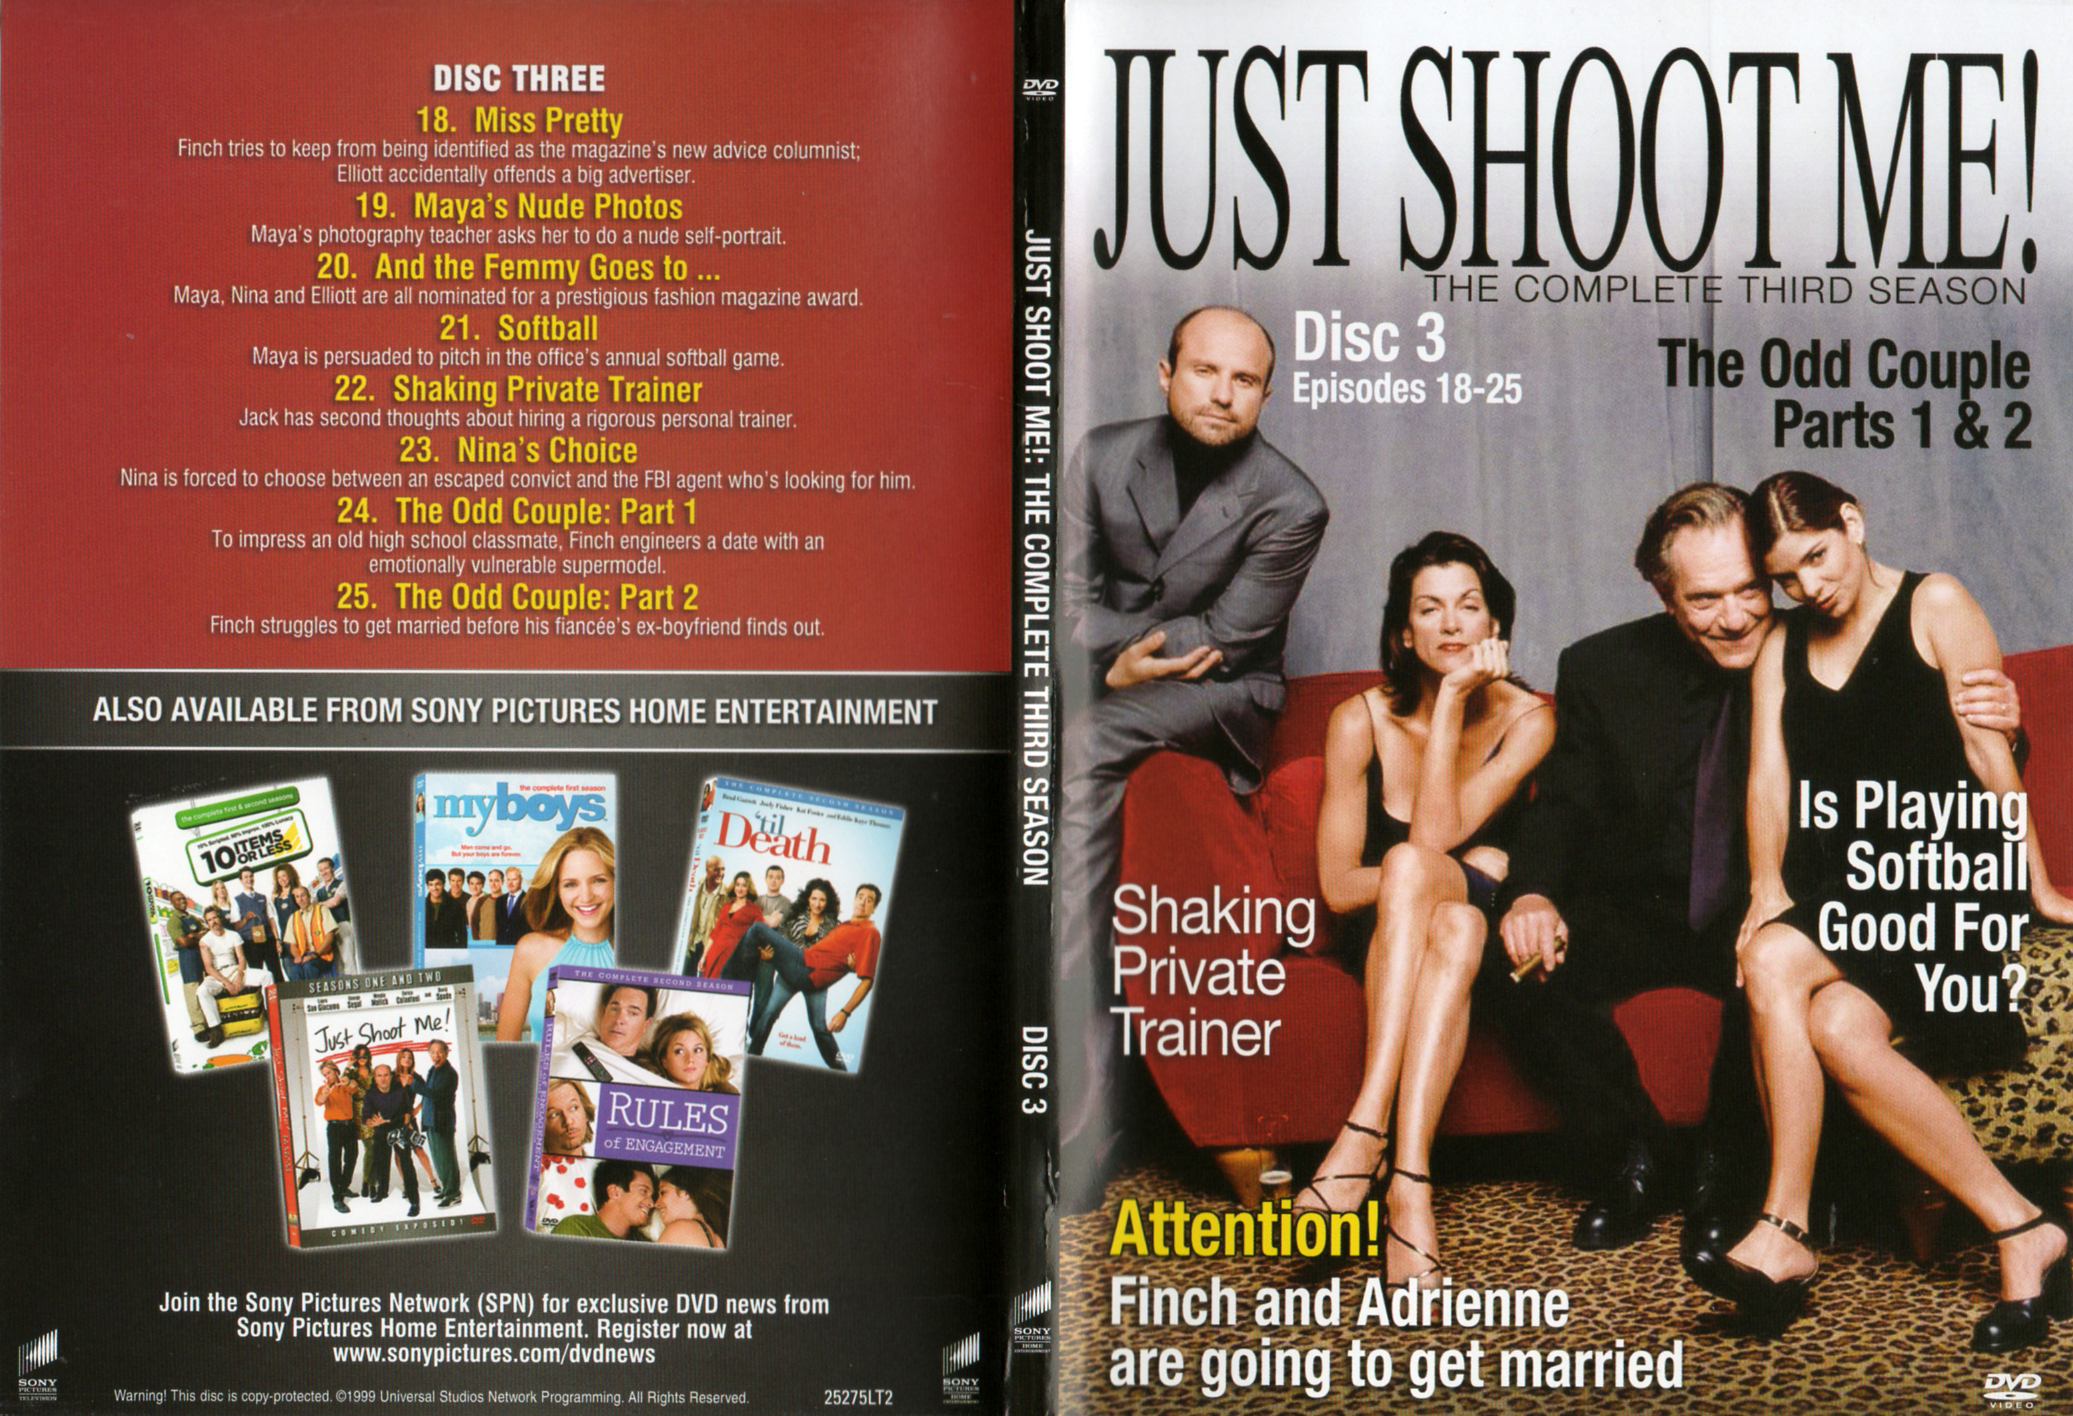 Jaquette DVD Just Shoot me Saison 2 Zone 1 DVD 2